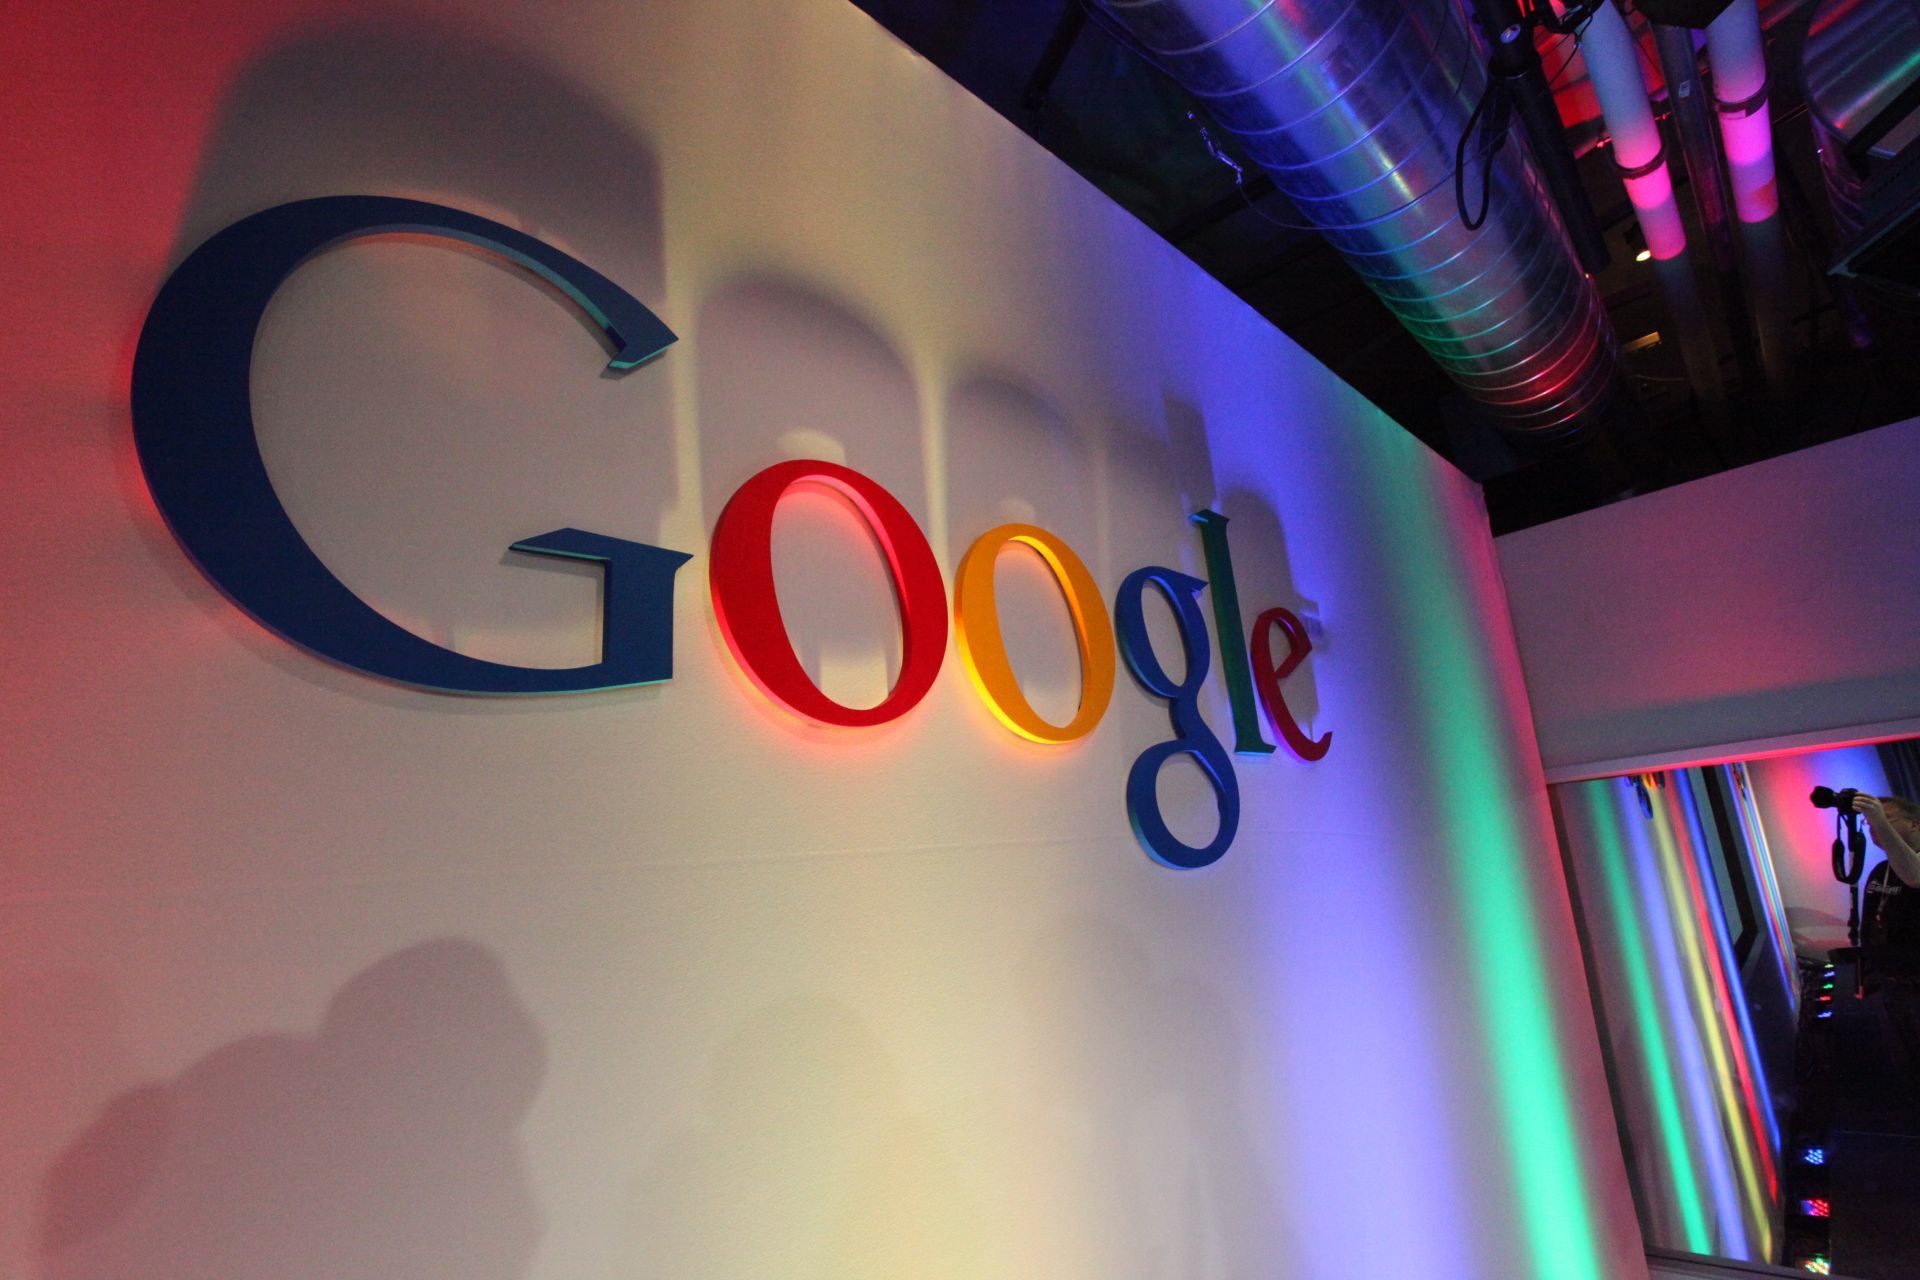 Google revela que operadores rusos compraron anuncios en sus plataformas